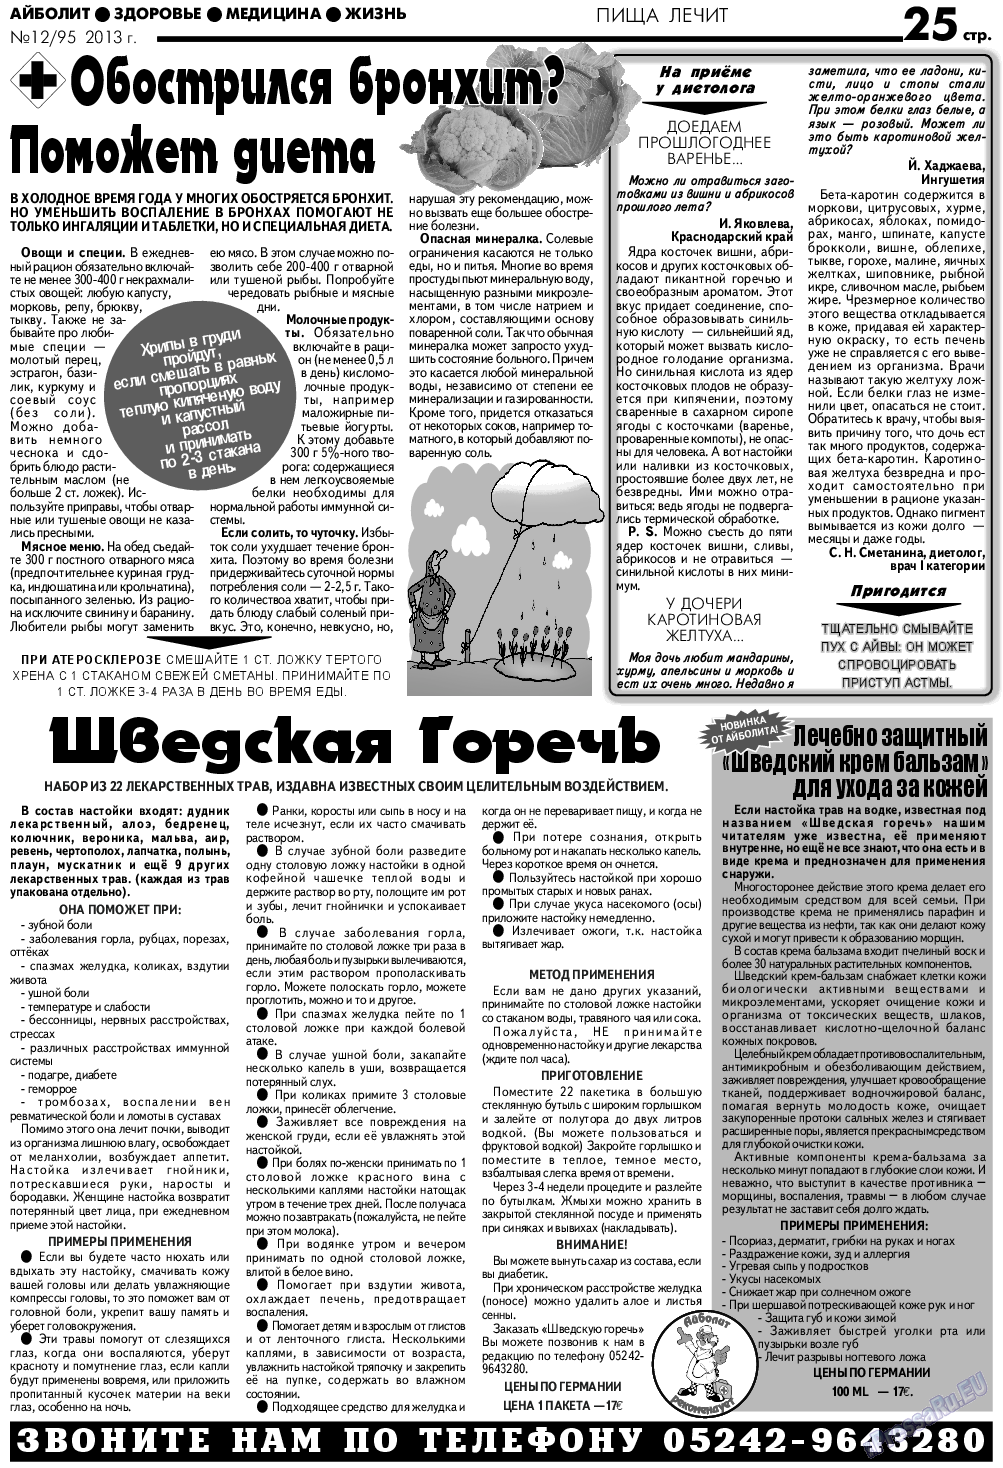 АйБолит, газета. 2013 №12 стр.25